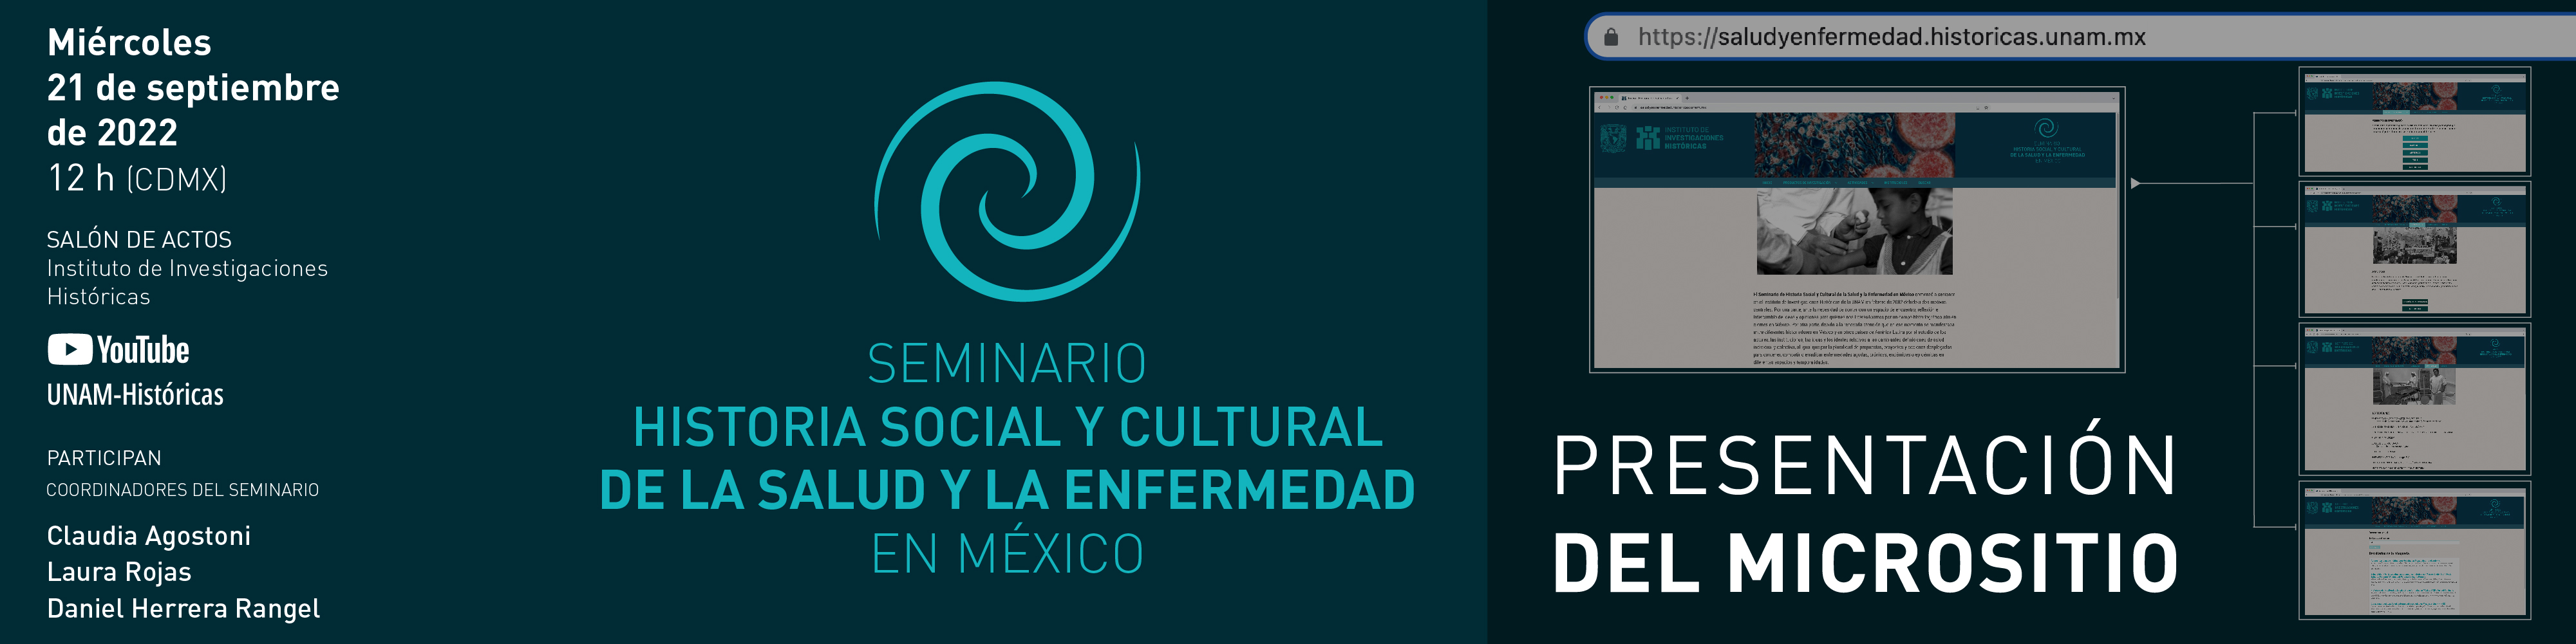 Presentación del micrositio del Seminario Historia Social y Cultural de la Salud y la Enfermedad en México